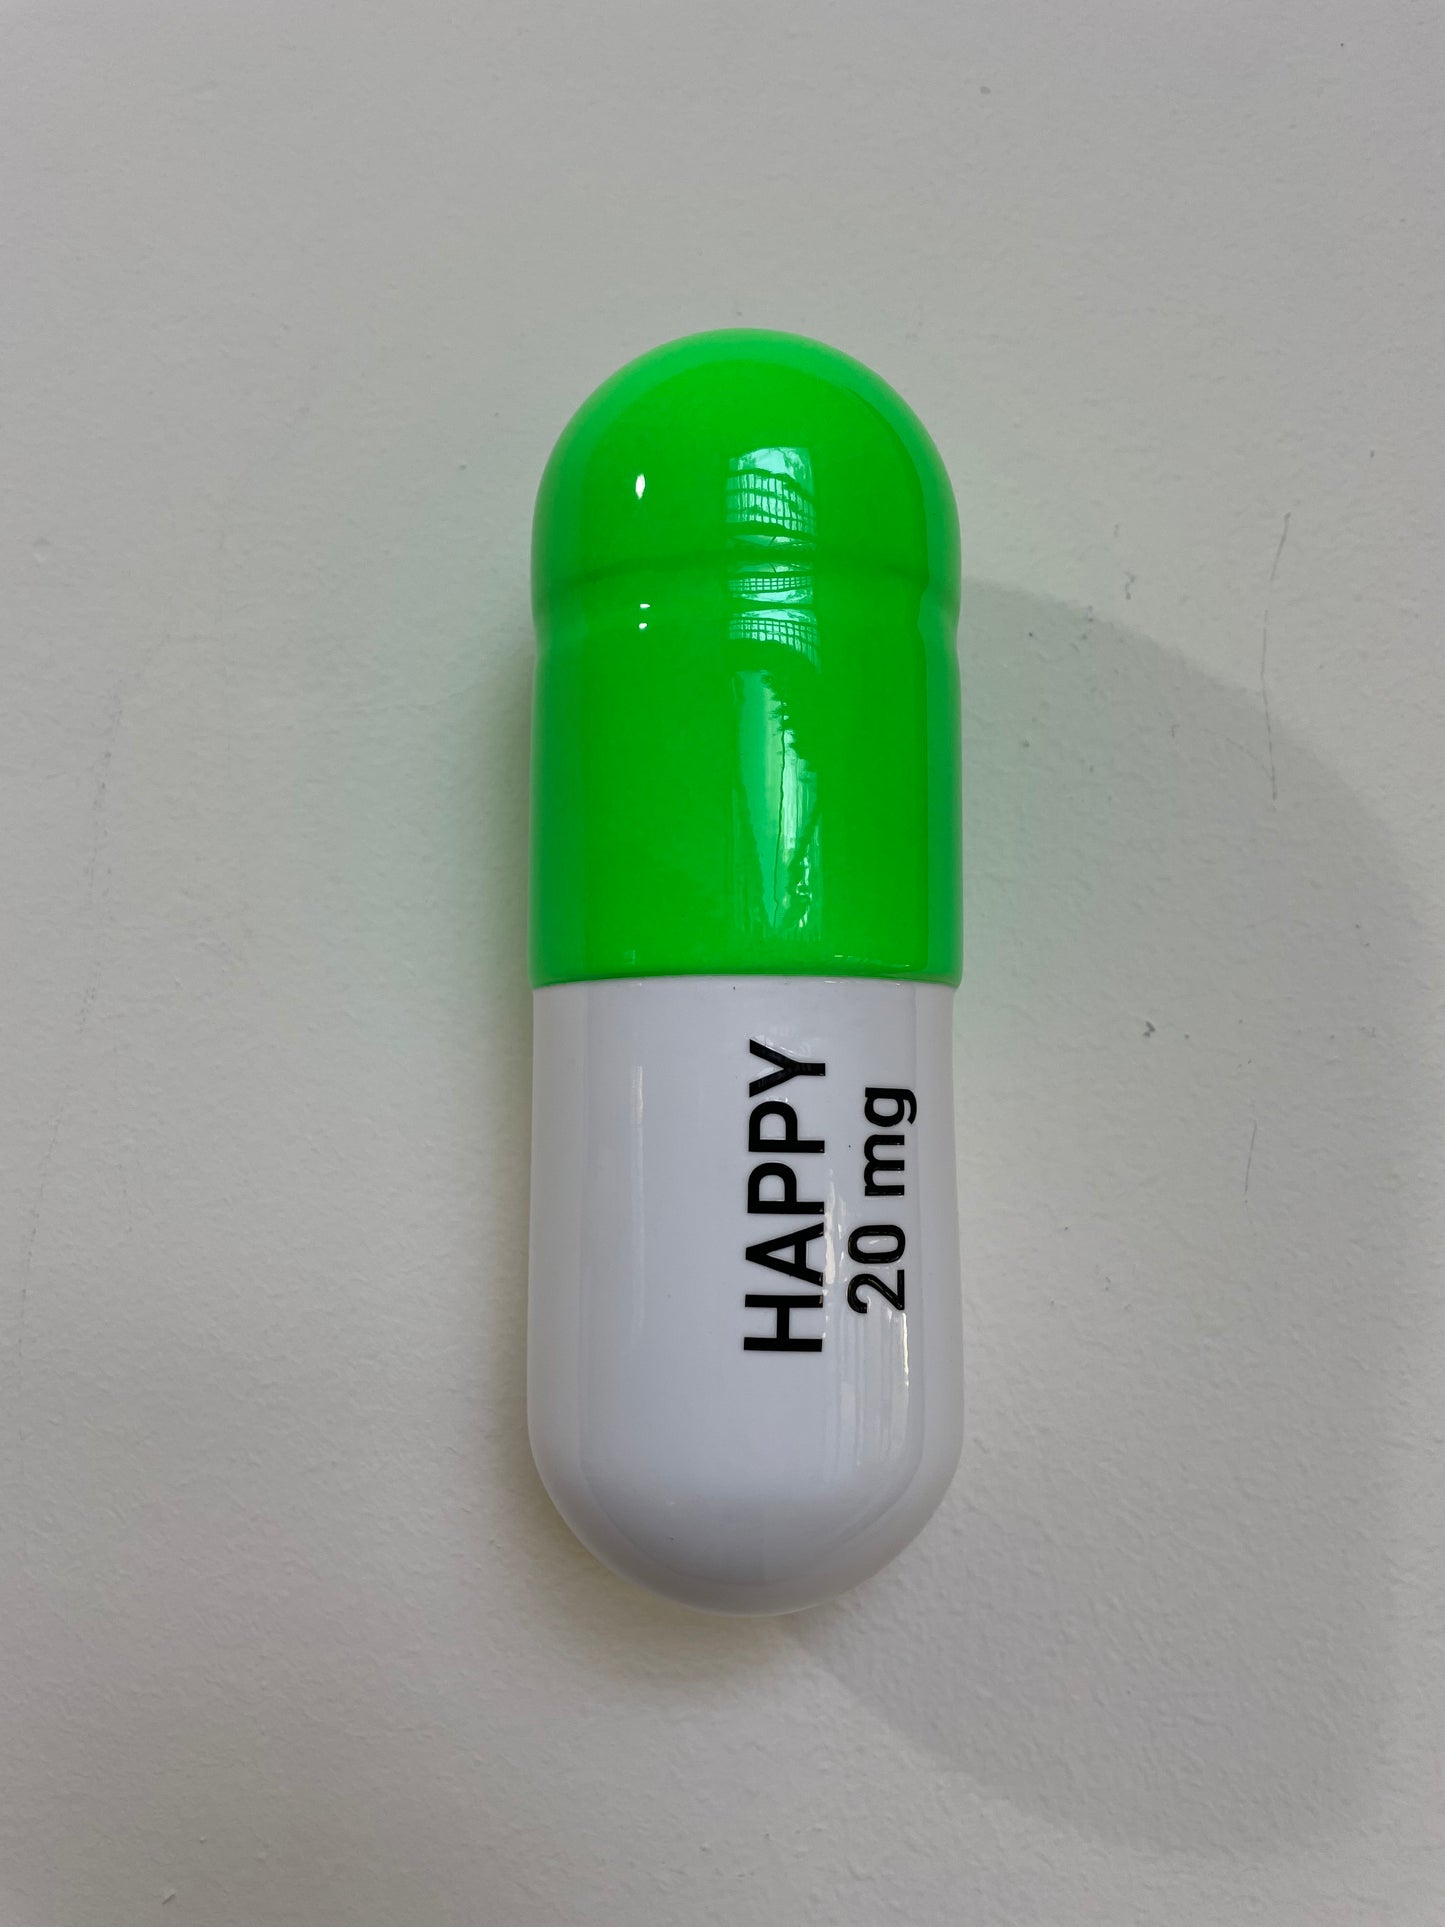 Ceramic Happy Pill - Fluorescent Green and White